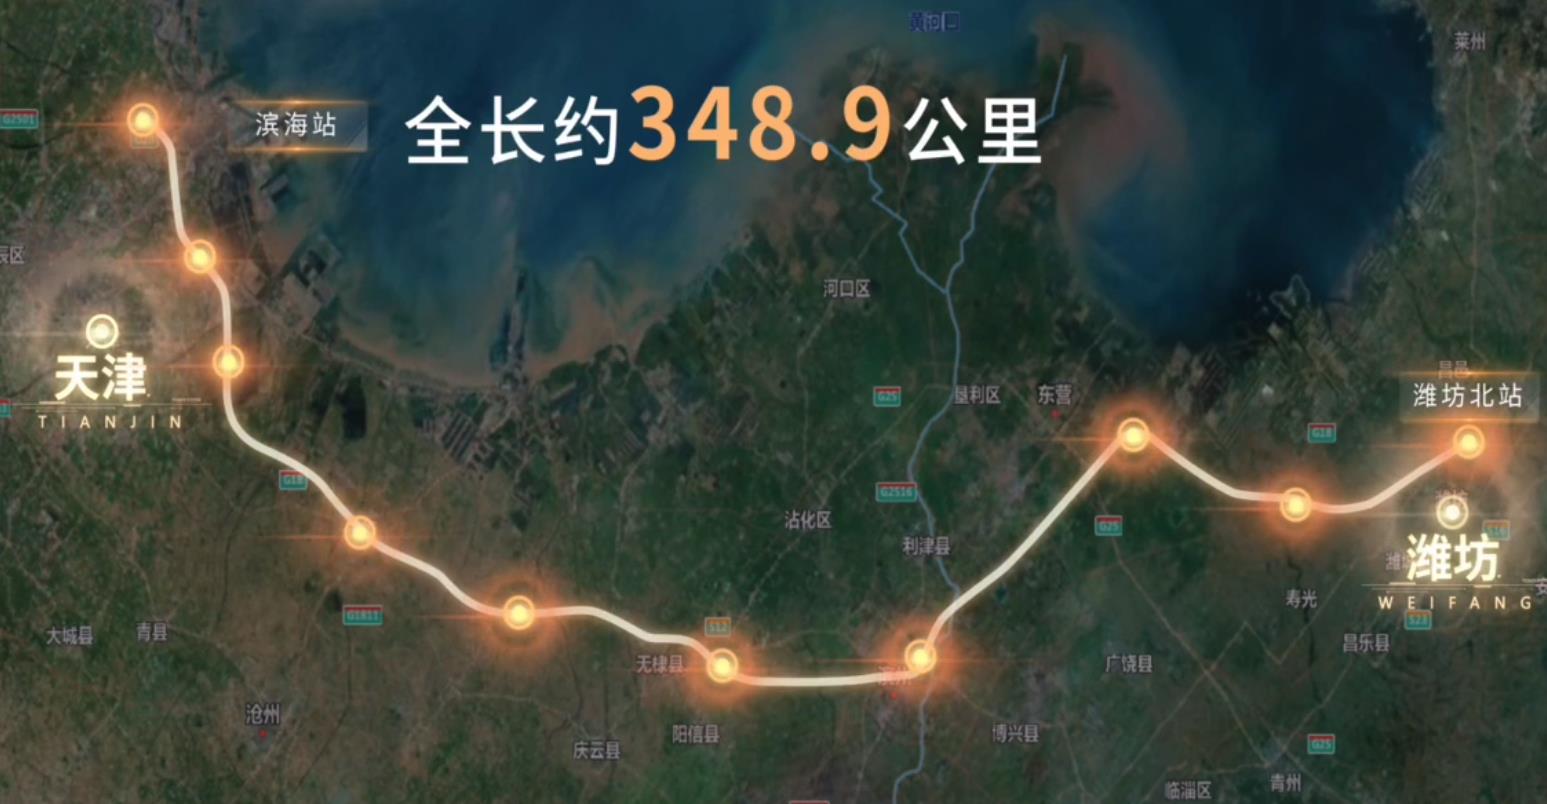 京津冀地区最大高铁盾构隧道开始掘进